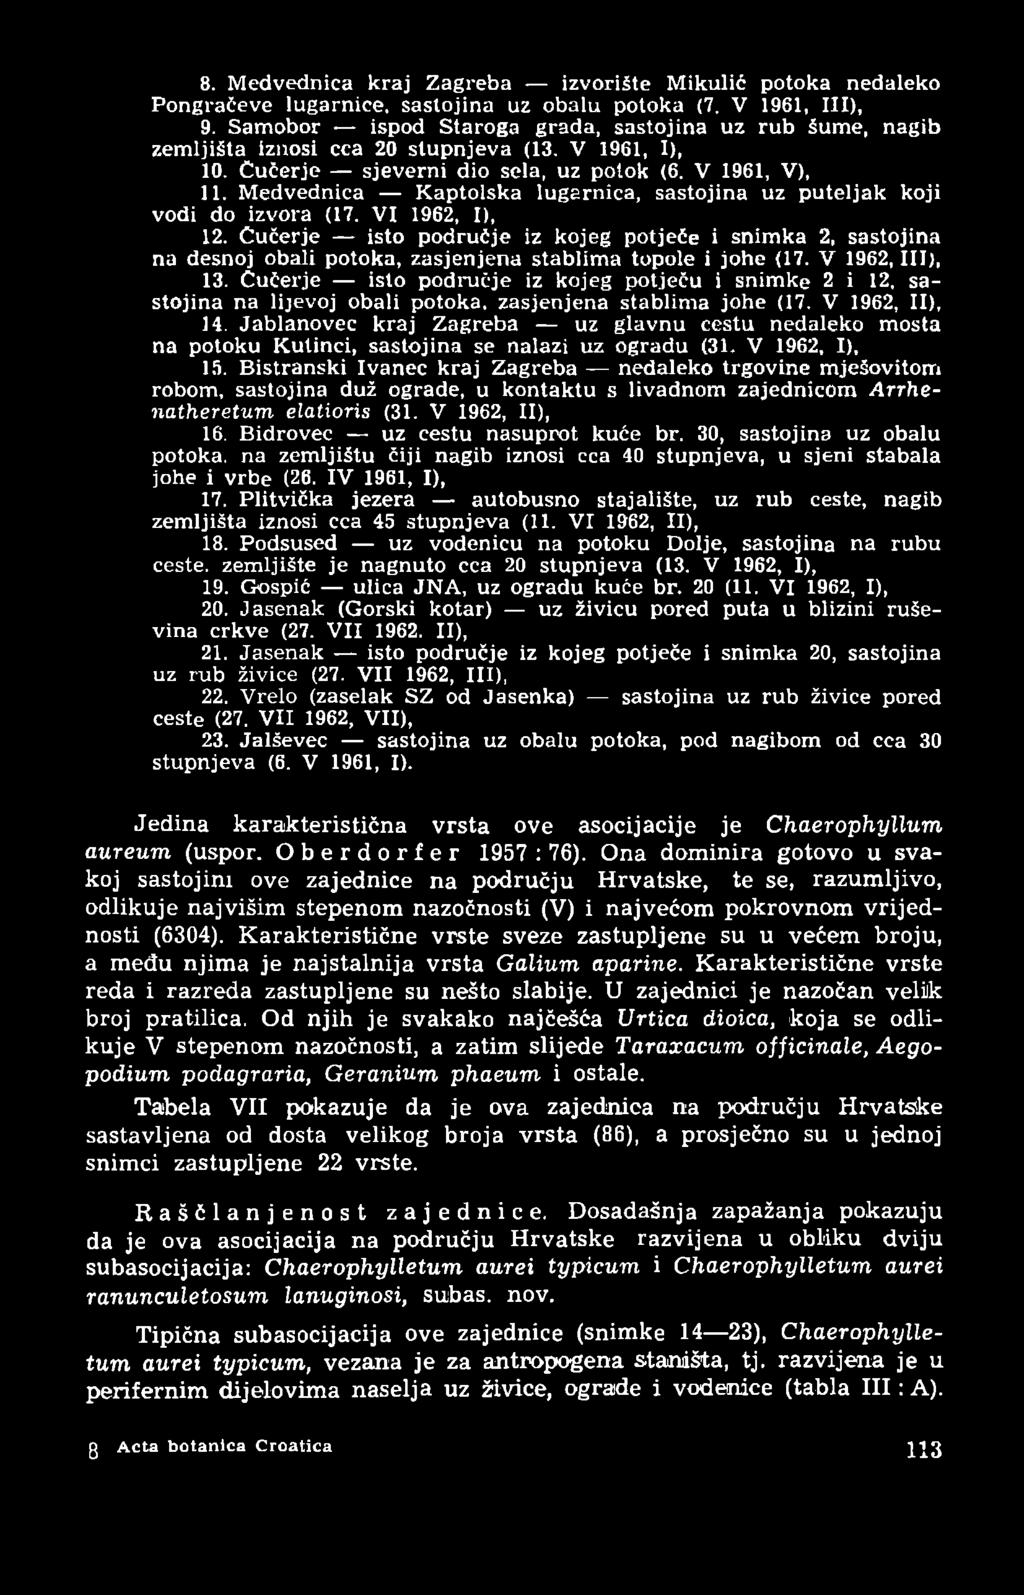 Medvednica Kaptolska lugarnica, sastojina uz puteljak koji vodi do izvora (17. VI 1962, I), 12.